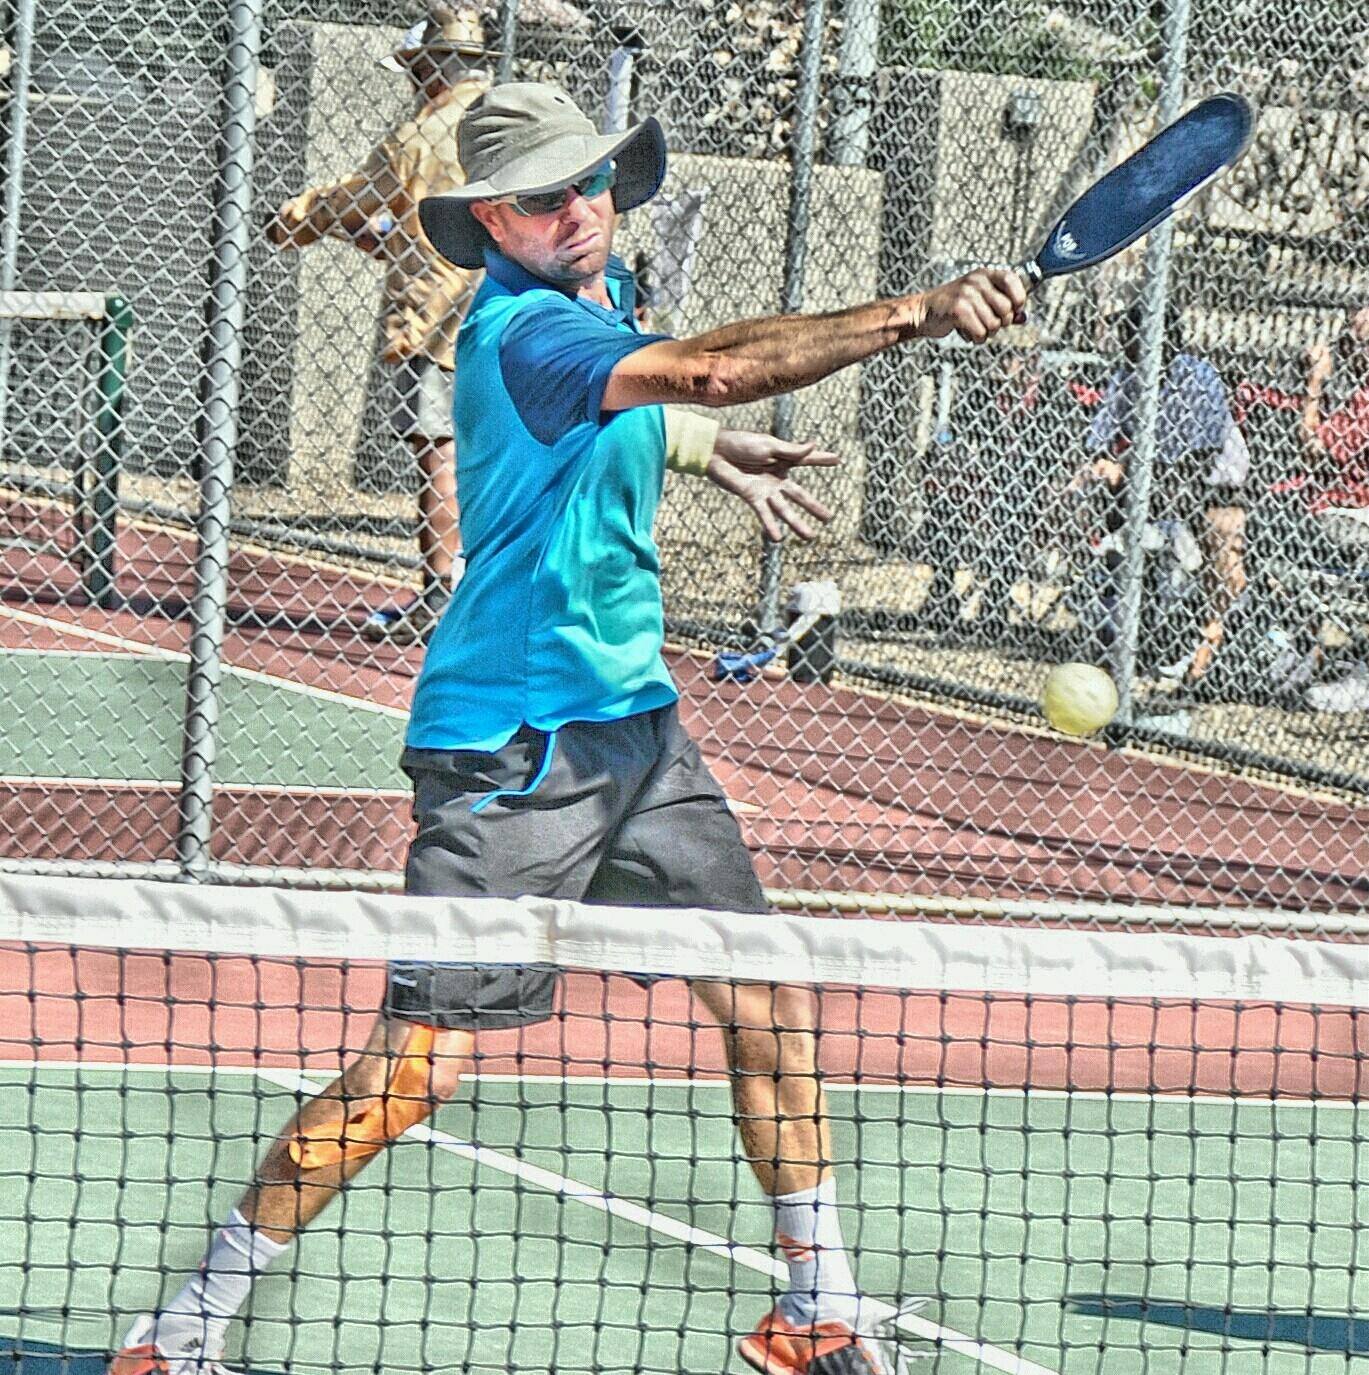 Morgan Evans at 2016 U. S. Open